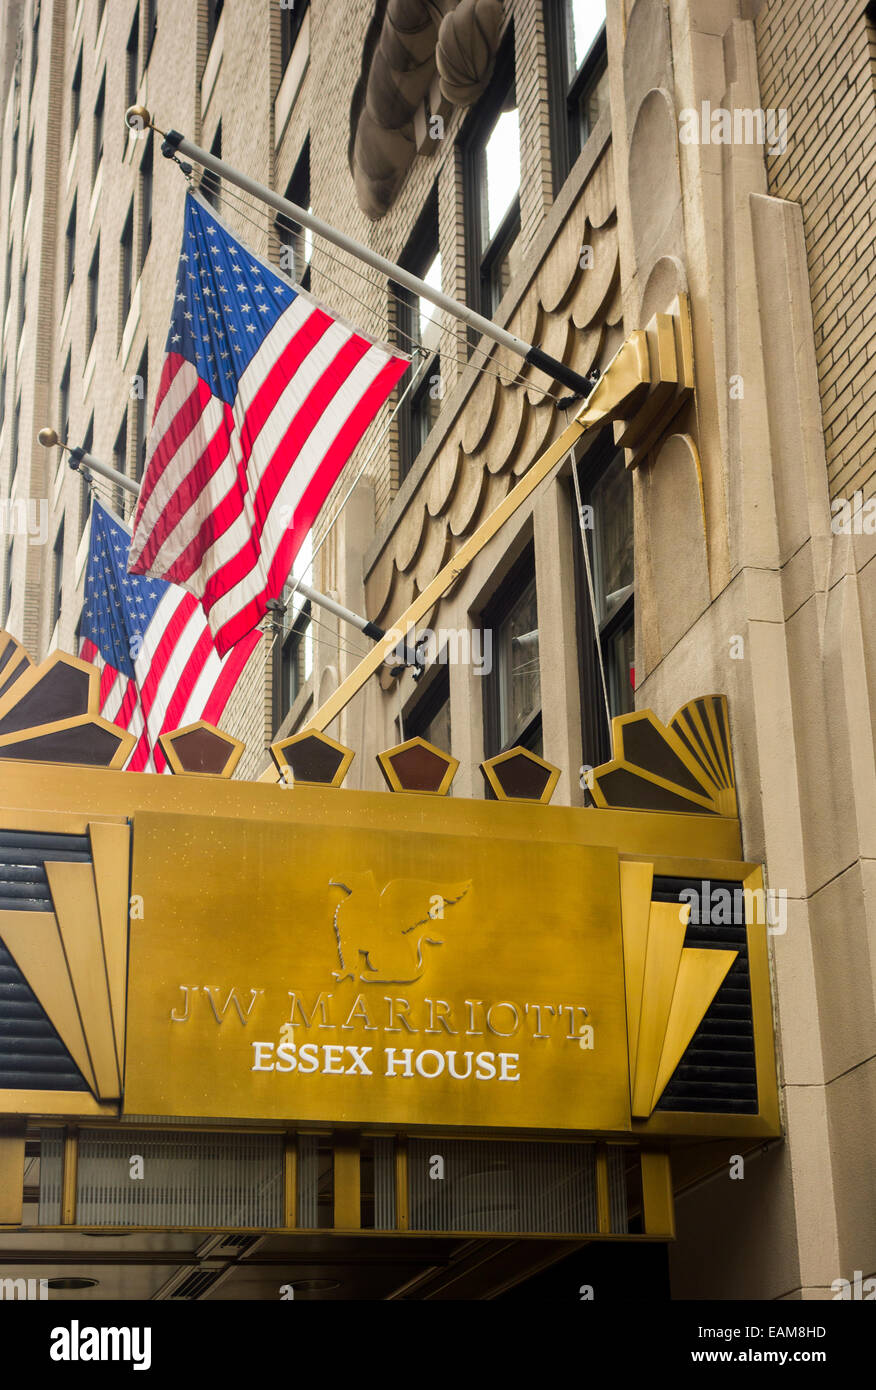 El Essex House hotel JW Marriott en la Ciudad de Nueva York Foto de stock